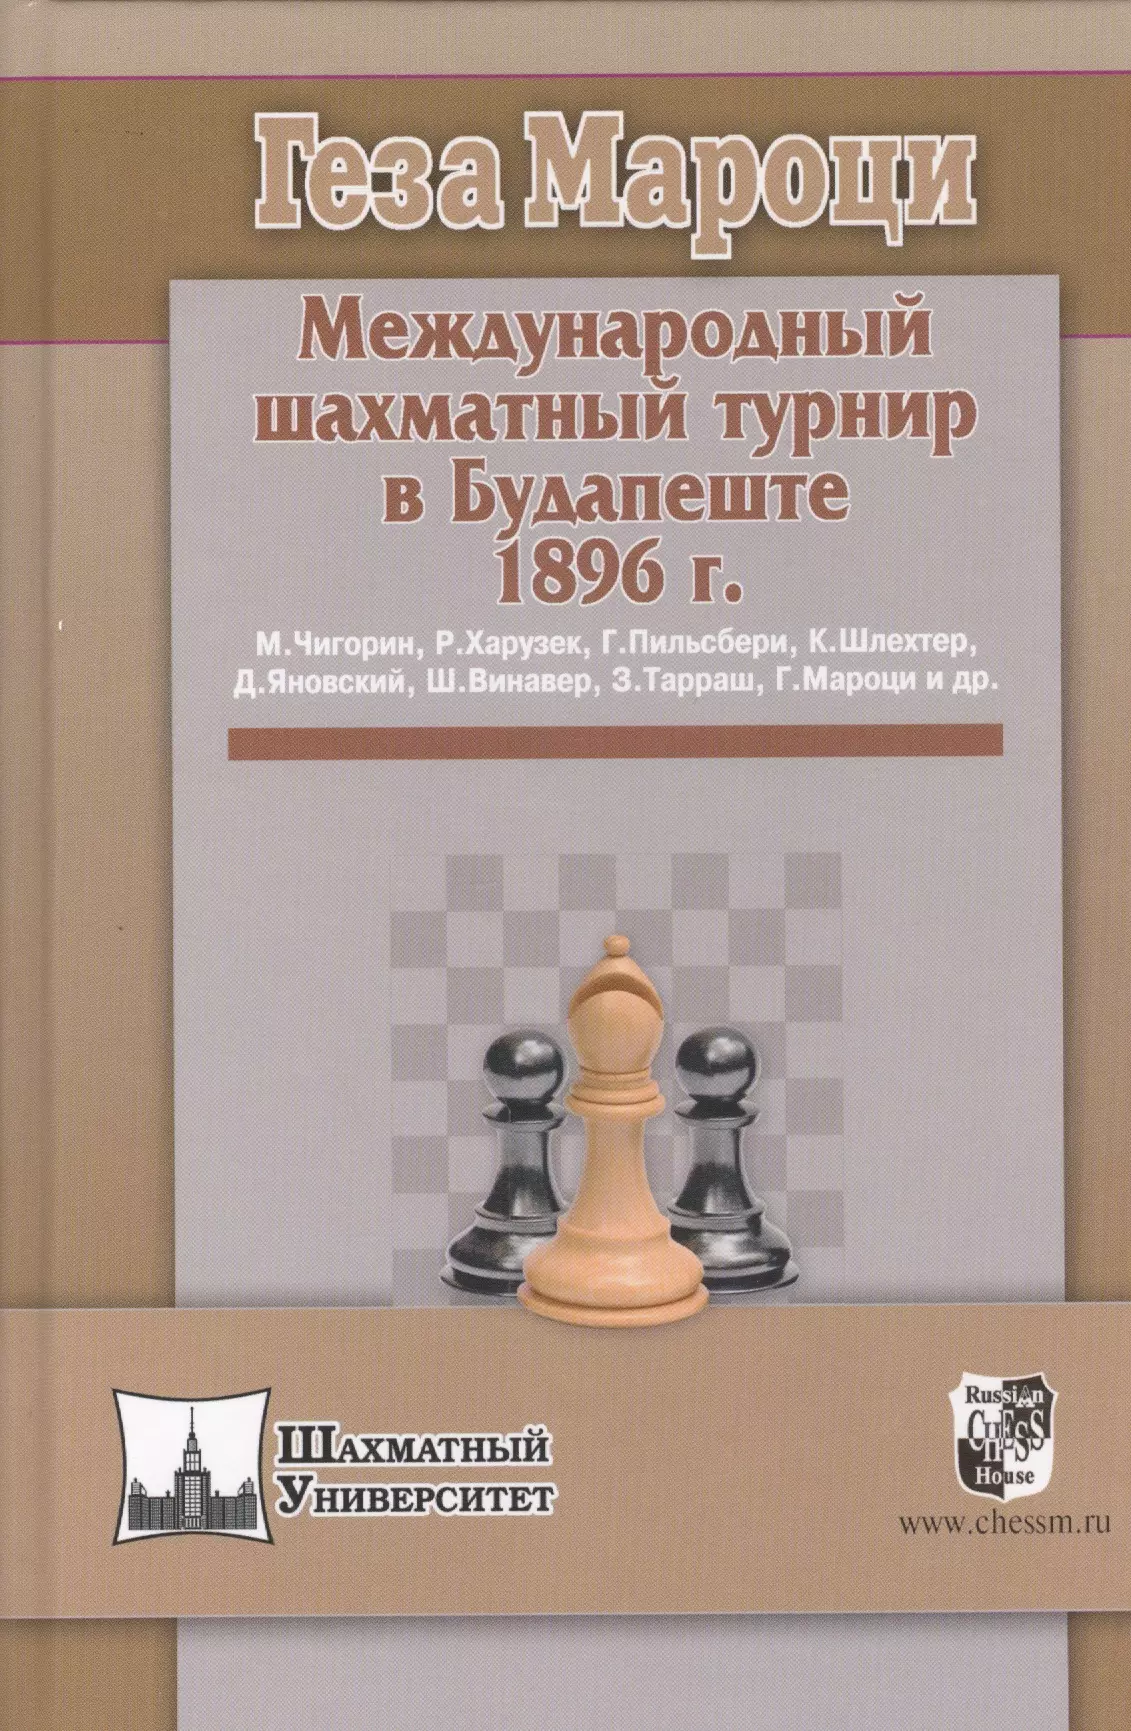 боголюбов е международный шахматный турнир в москве 1925 года Международный шахматный турнир в Будапеште 1896 г.